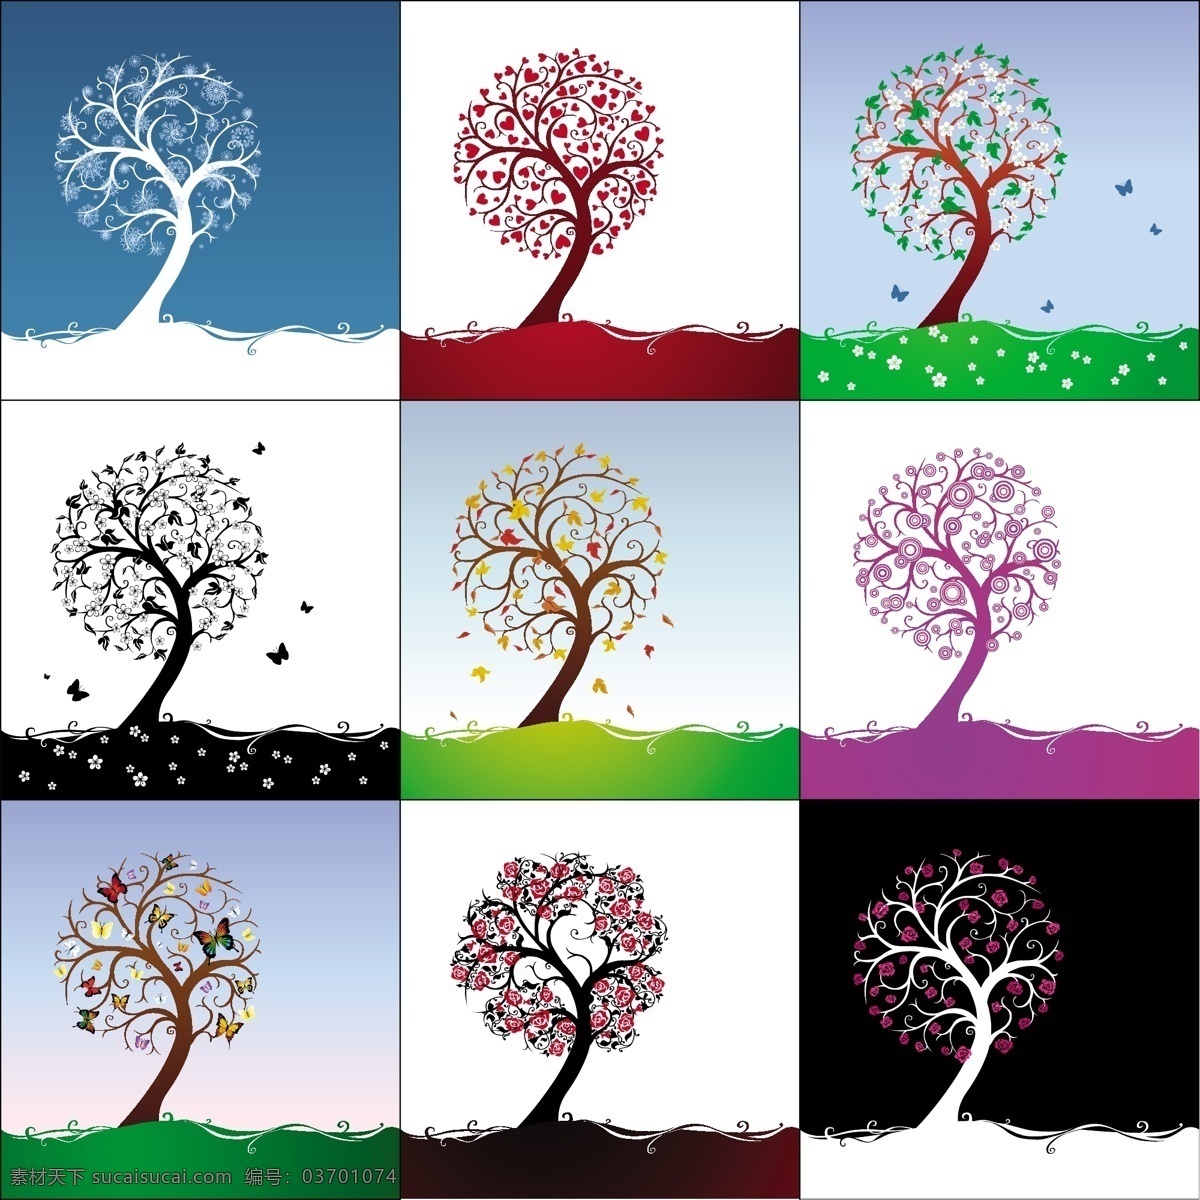 组 精美 不同 色 调和 季节 抽象 树 矢量 抽象树 蝴蝶 花朵 落叶 矢量树木 矢量图 植物矢量素材 不同色调 不同季节 其他矢量图